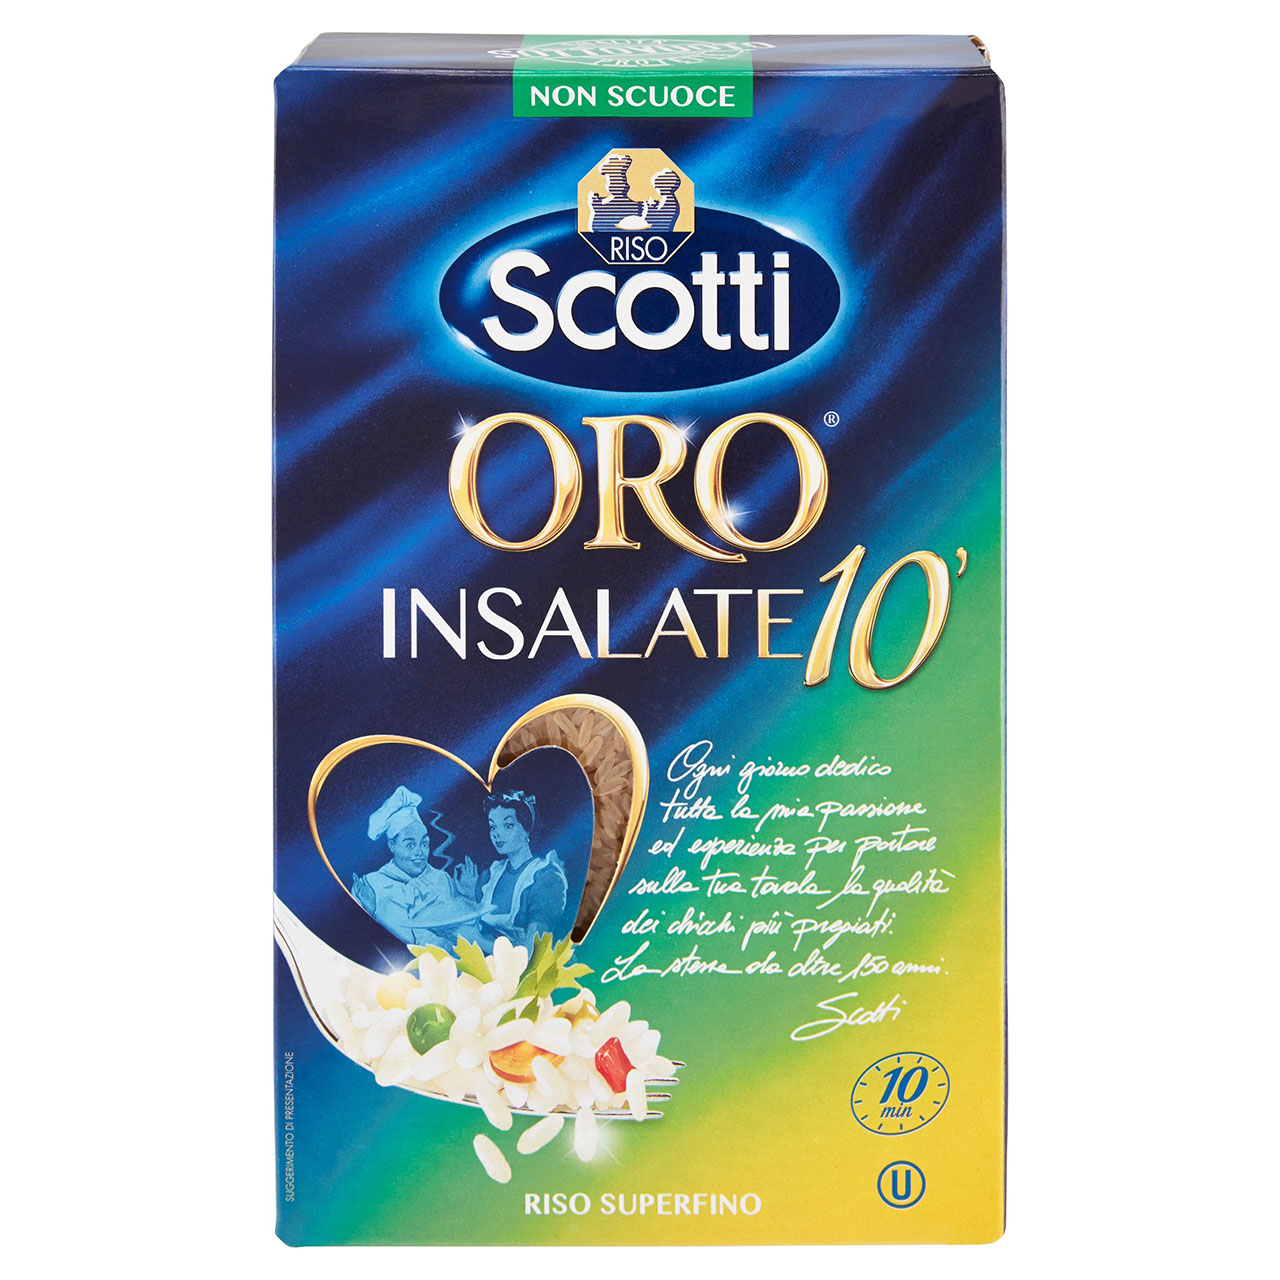 Riso Scotti Oro Insalate 10' in vendita online